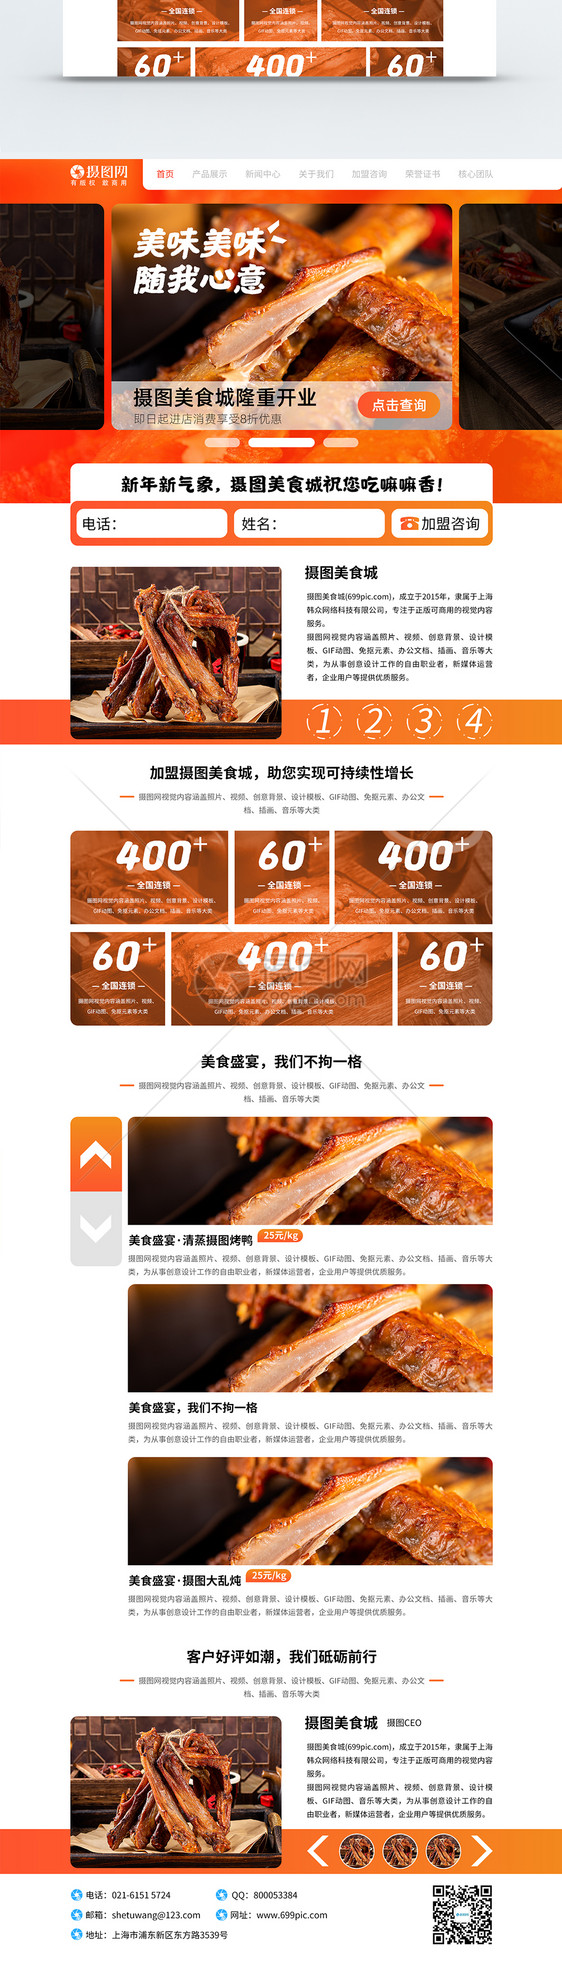 简约大气美食促销类web首页设计模板图片